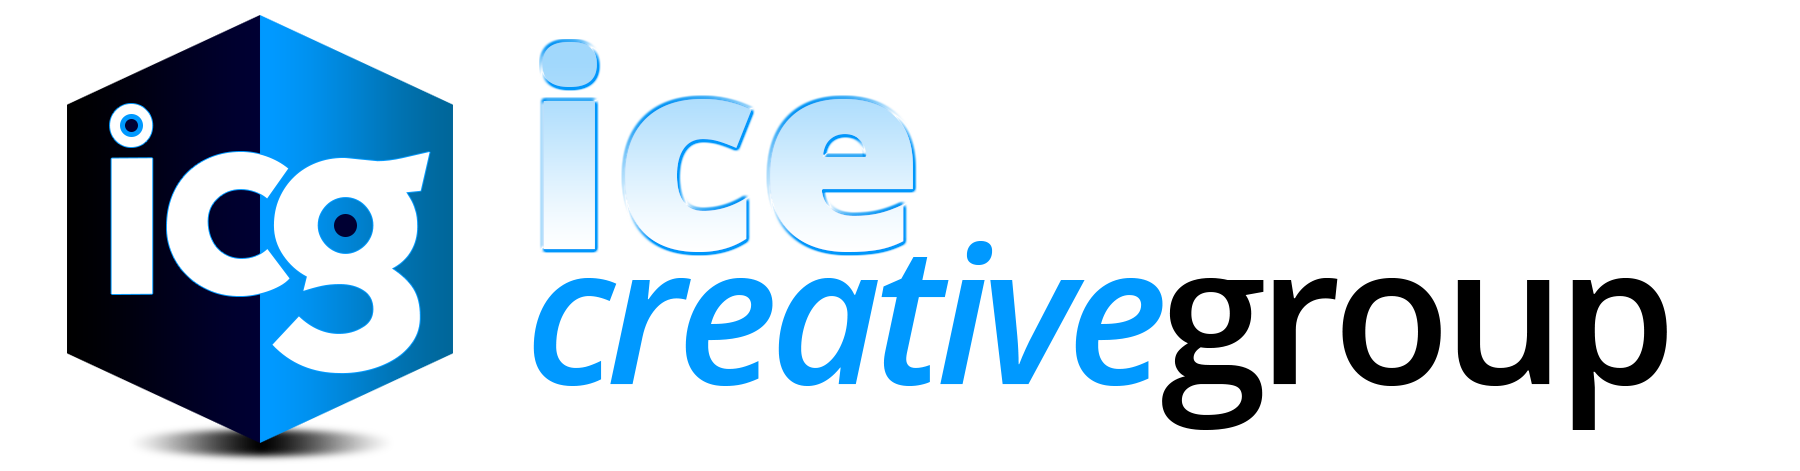 Ice Creative Group